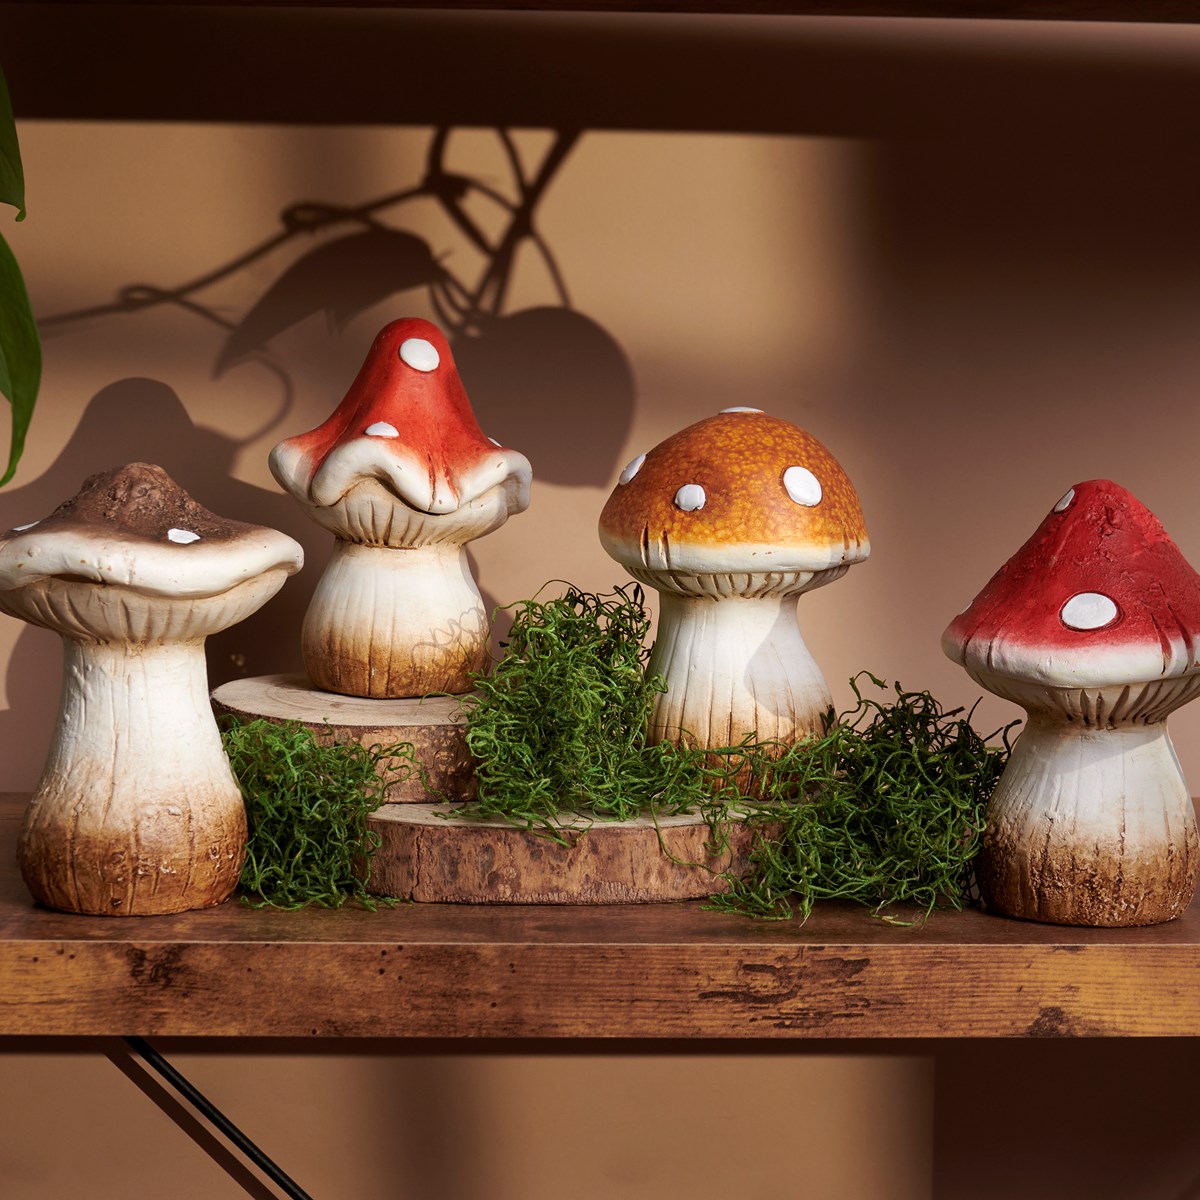 Large Mushrooms Figurine Set - Stoneware, Wood